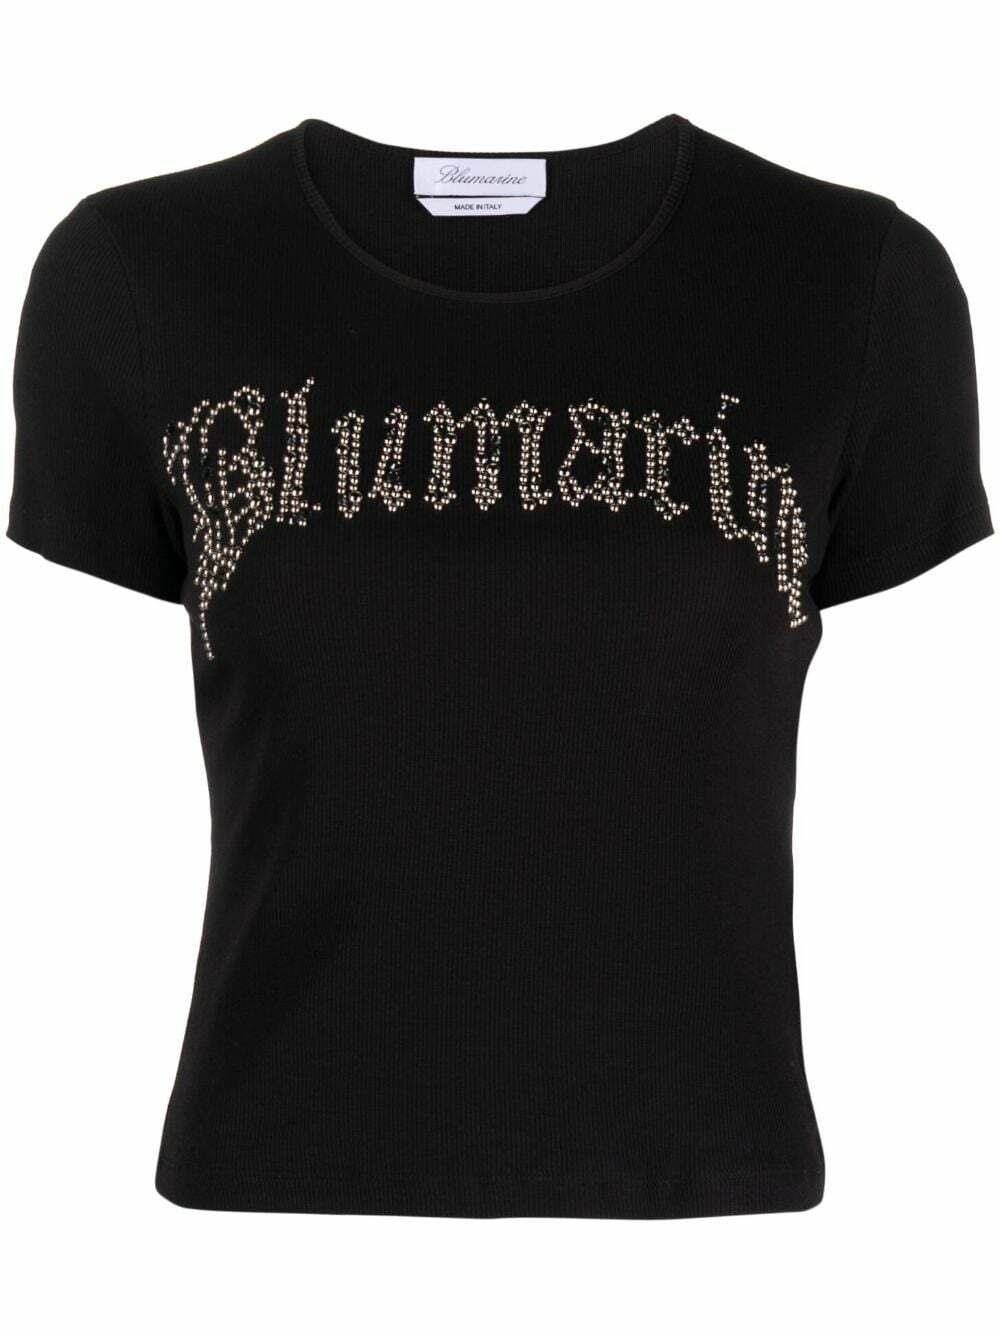 BLUMARINE - Rhinestone Logo Cotton T-shirt Blumarine